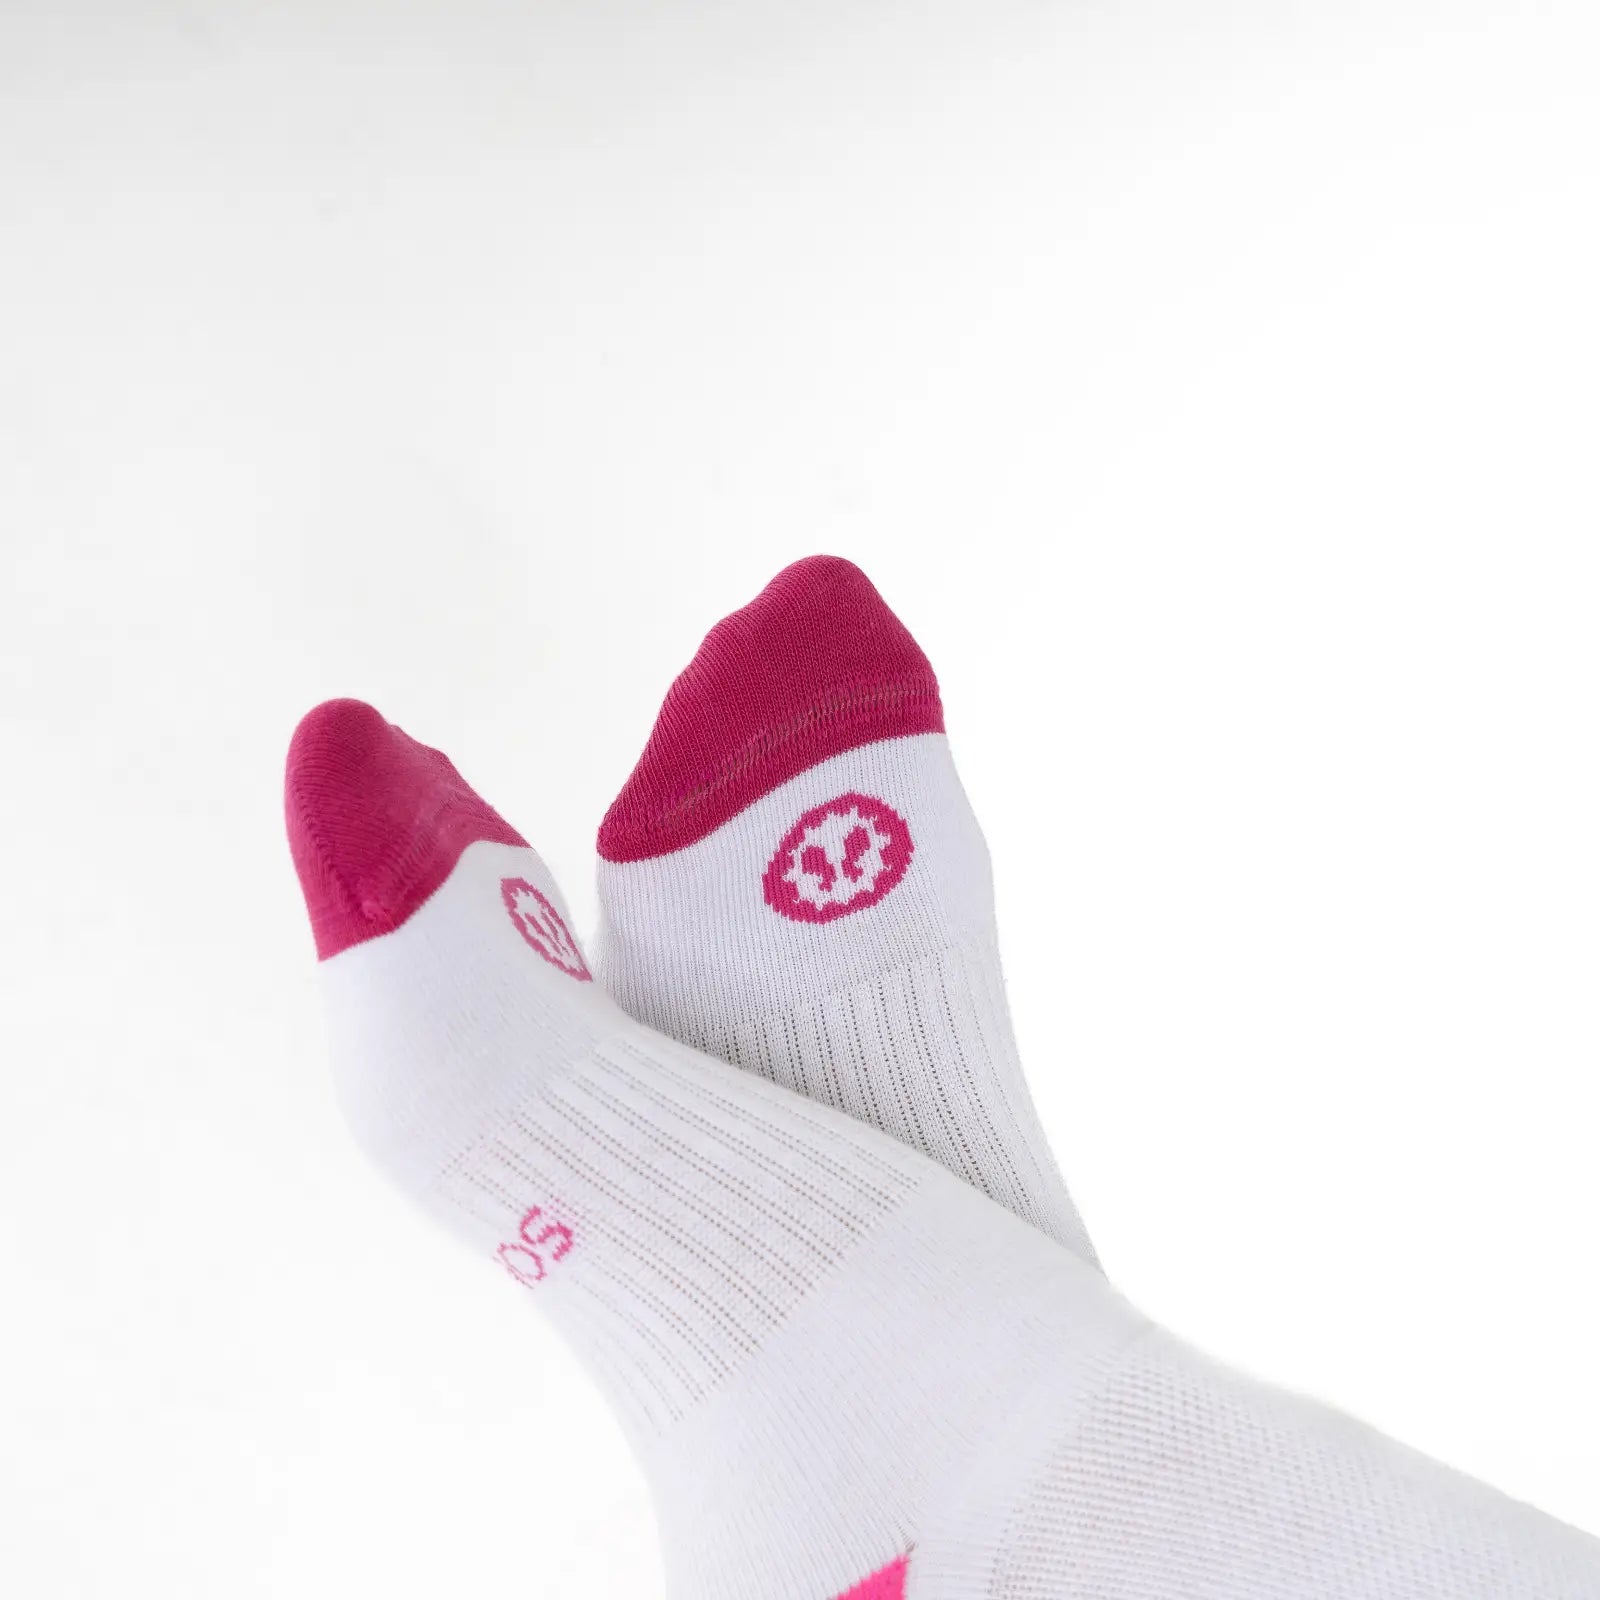 Calcetines de compresión para trabajar todo el día de pie, color blanco y rosa y material algodón